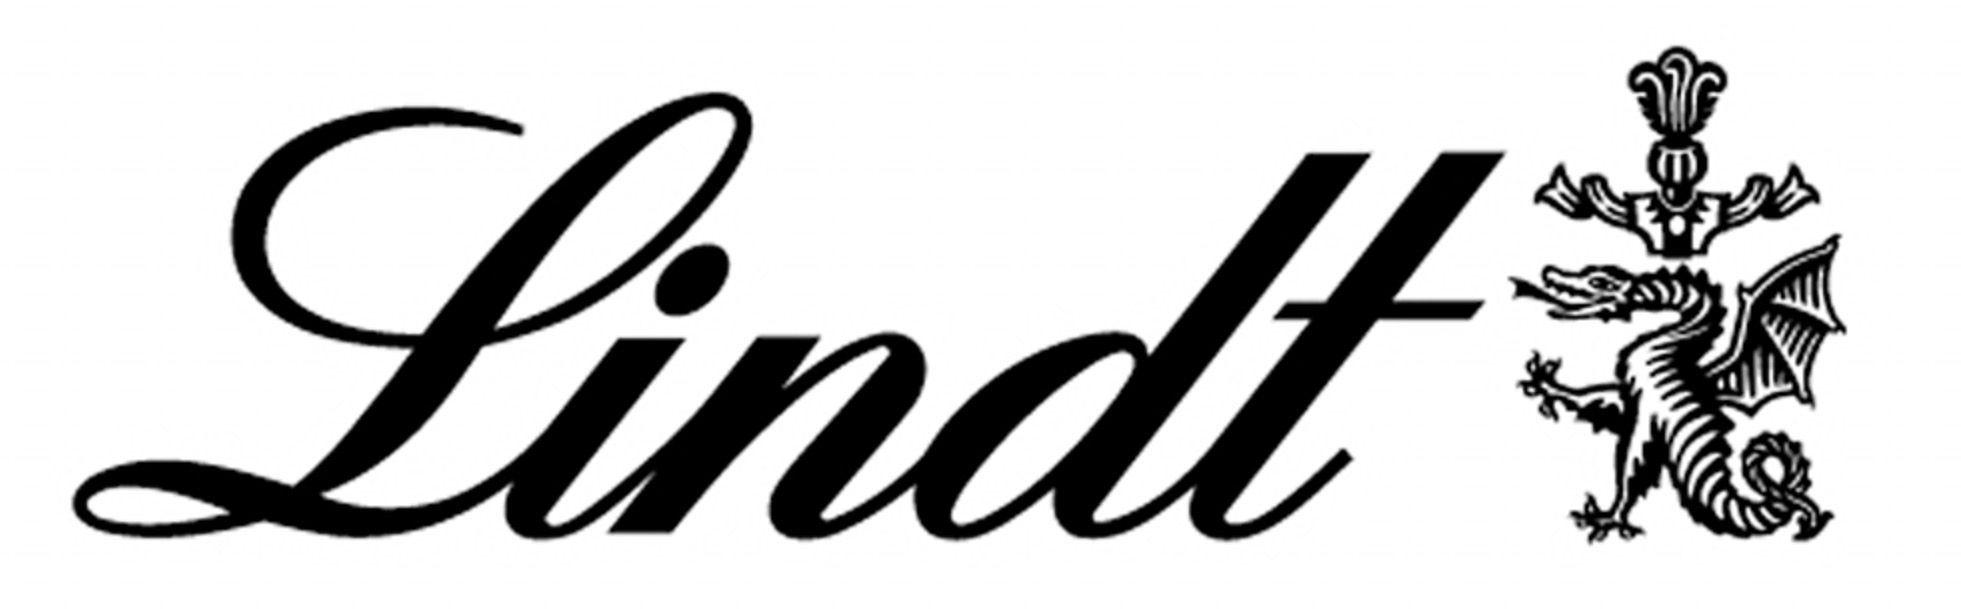 Lindt Logo - Lindt logo